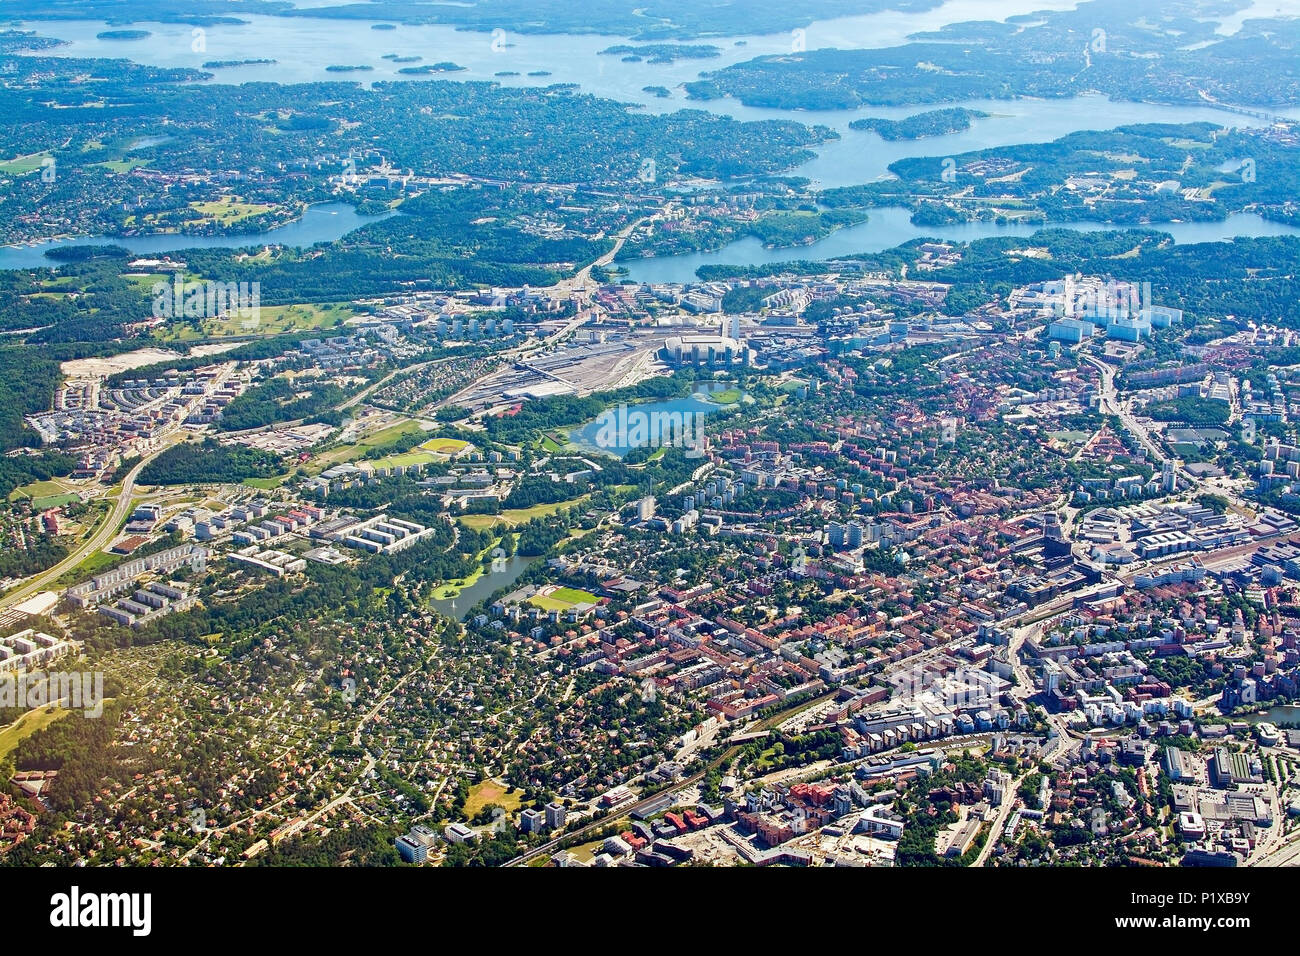 STOCKHOLM, Schweden - 1. JUNI 2018: Luftaufnahme über Solna bei Stockholm Sundbyberg inflight zum Flughafen Arlanda Flughafen an einem sonnigen Tag und am 1. Juni20108 in St Stockfoto